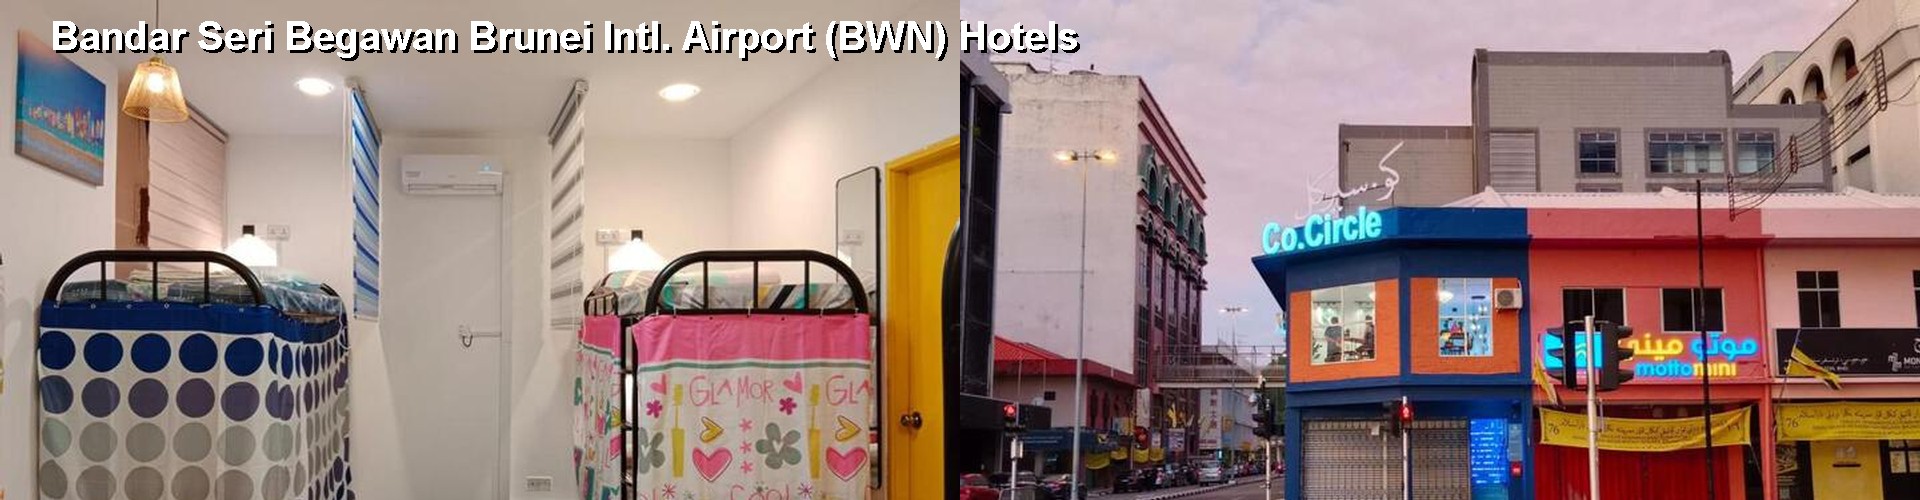 4 Best Hotels near Bandar Seri Begawan Brunei Intl. Airport (BWN)